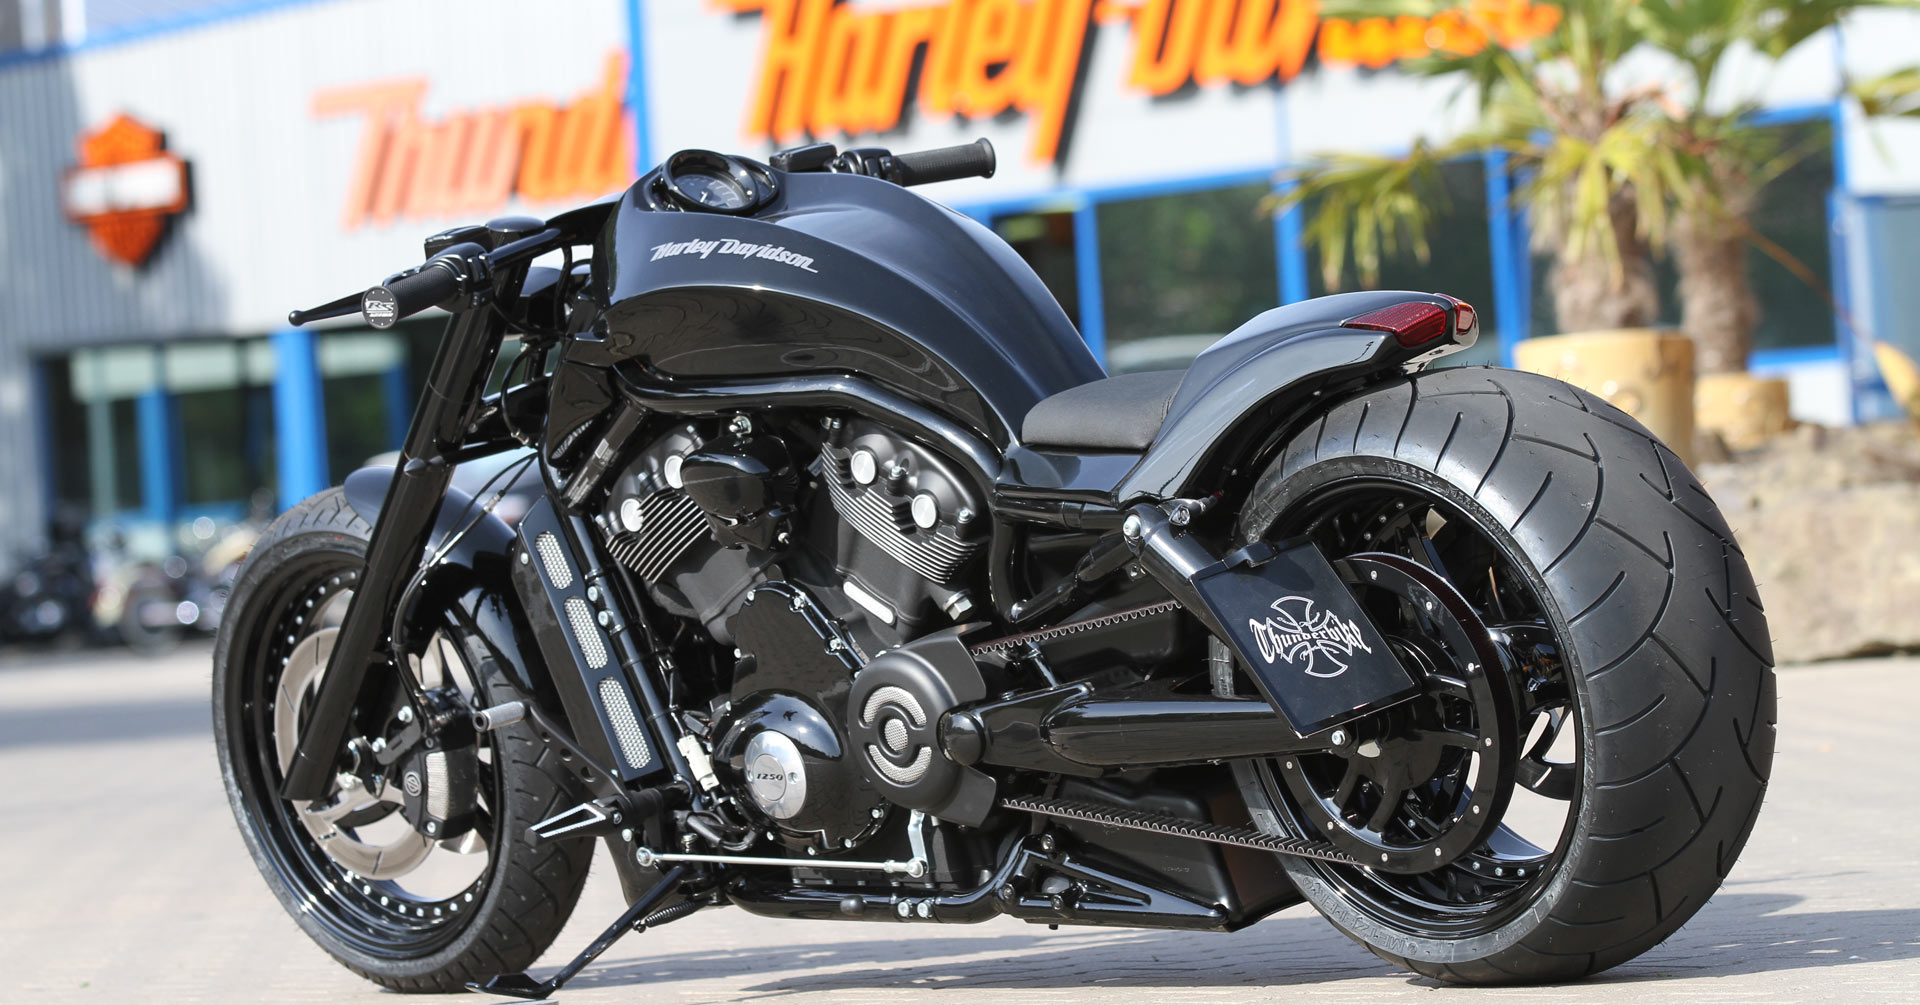 Customized HarleyDavidson VRod / VRSC Motorcycles by Thunderbike